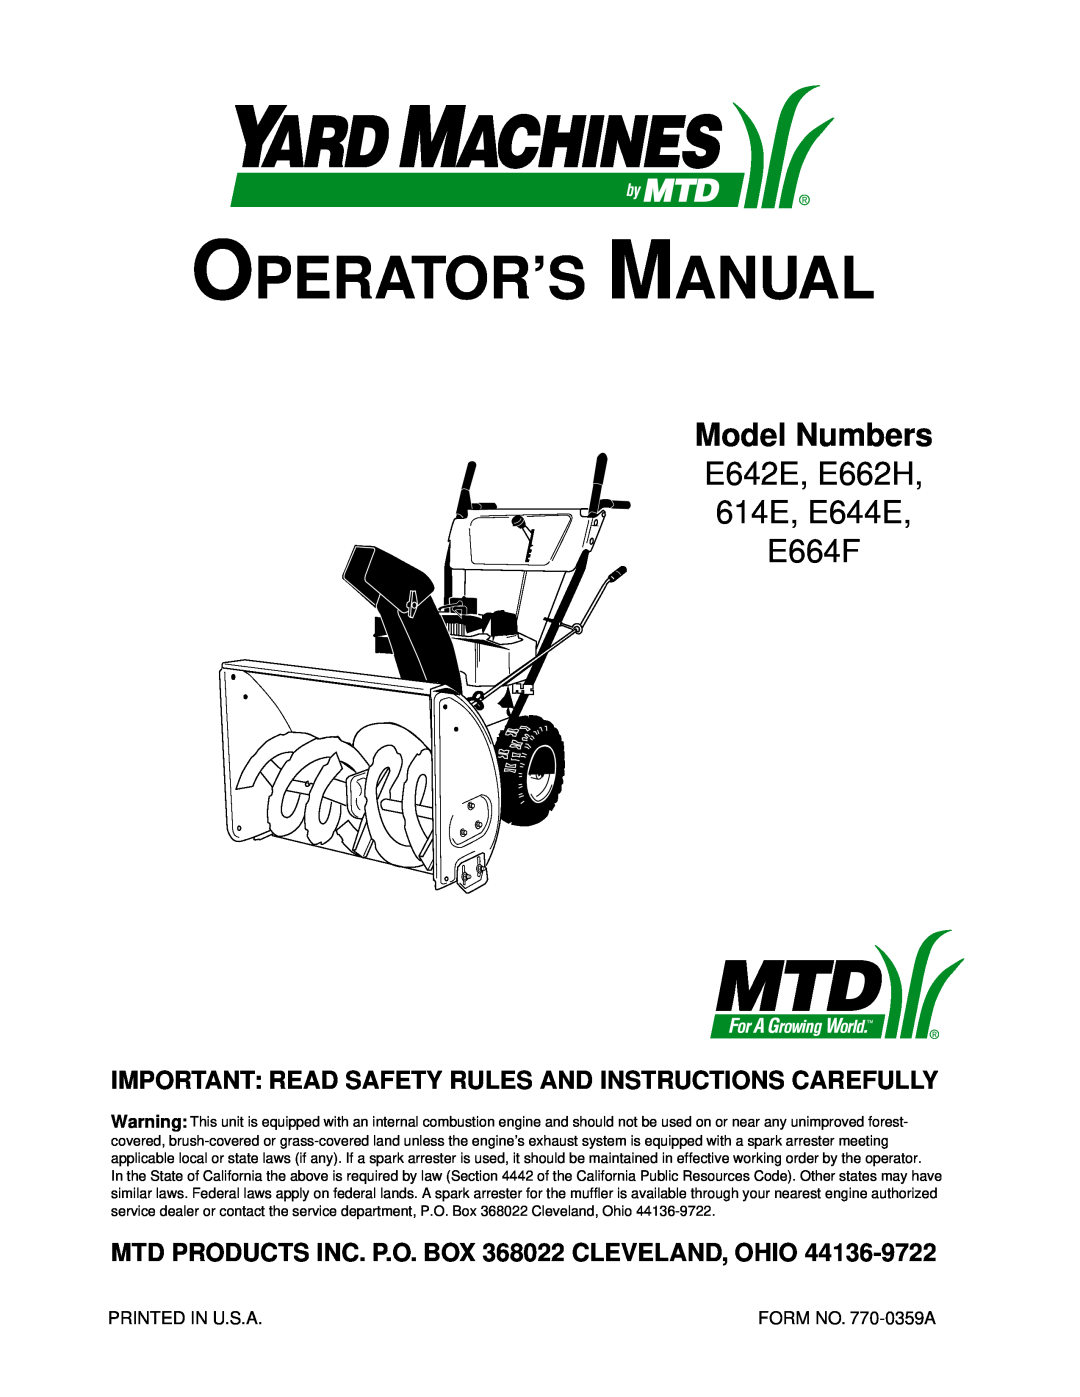 MTD E642F, E662E, E602E, E614E manual Model Numbers, MTD PRODUCTS INC. P.O. BOX 368022 CLEVELAND, OHIO, Operator’S Manual 